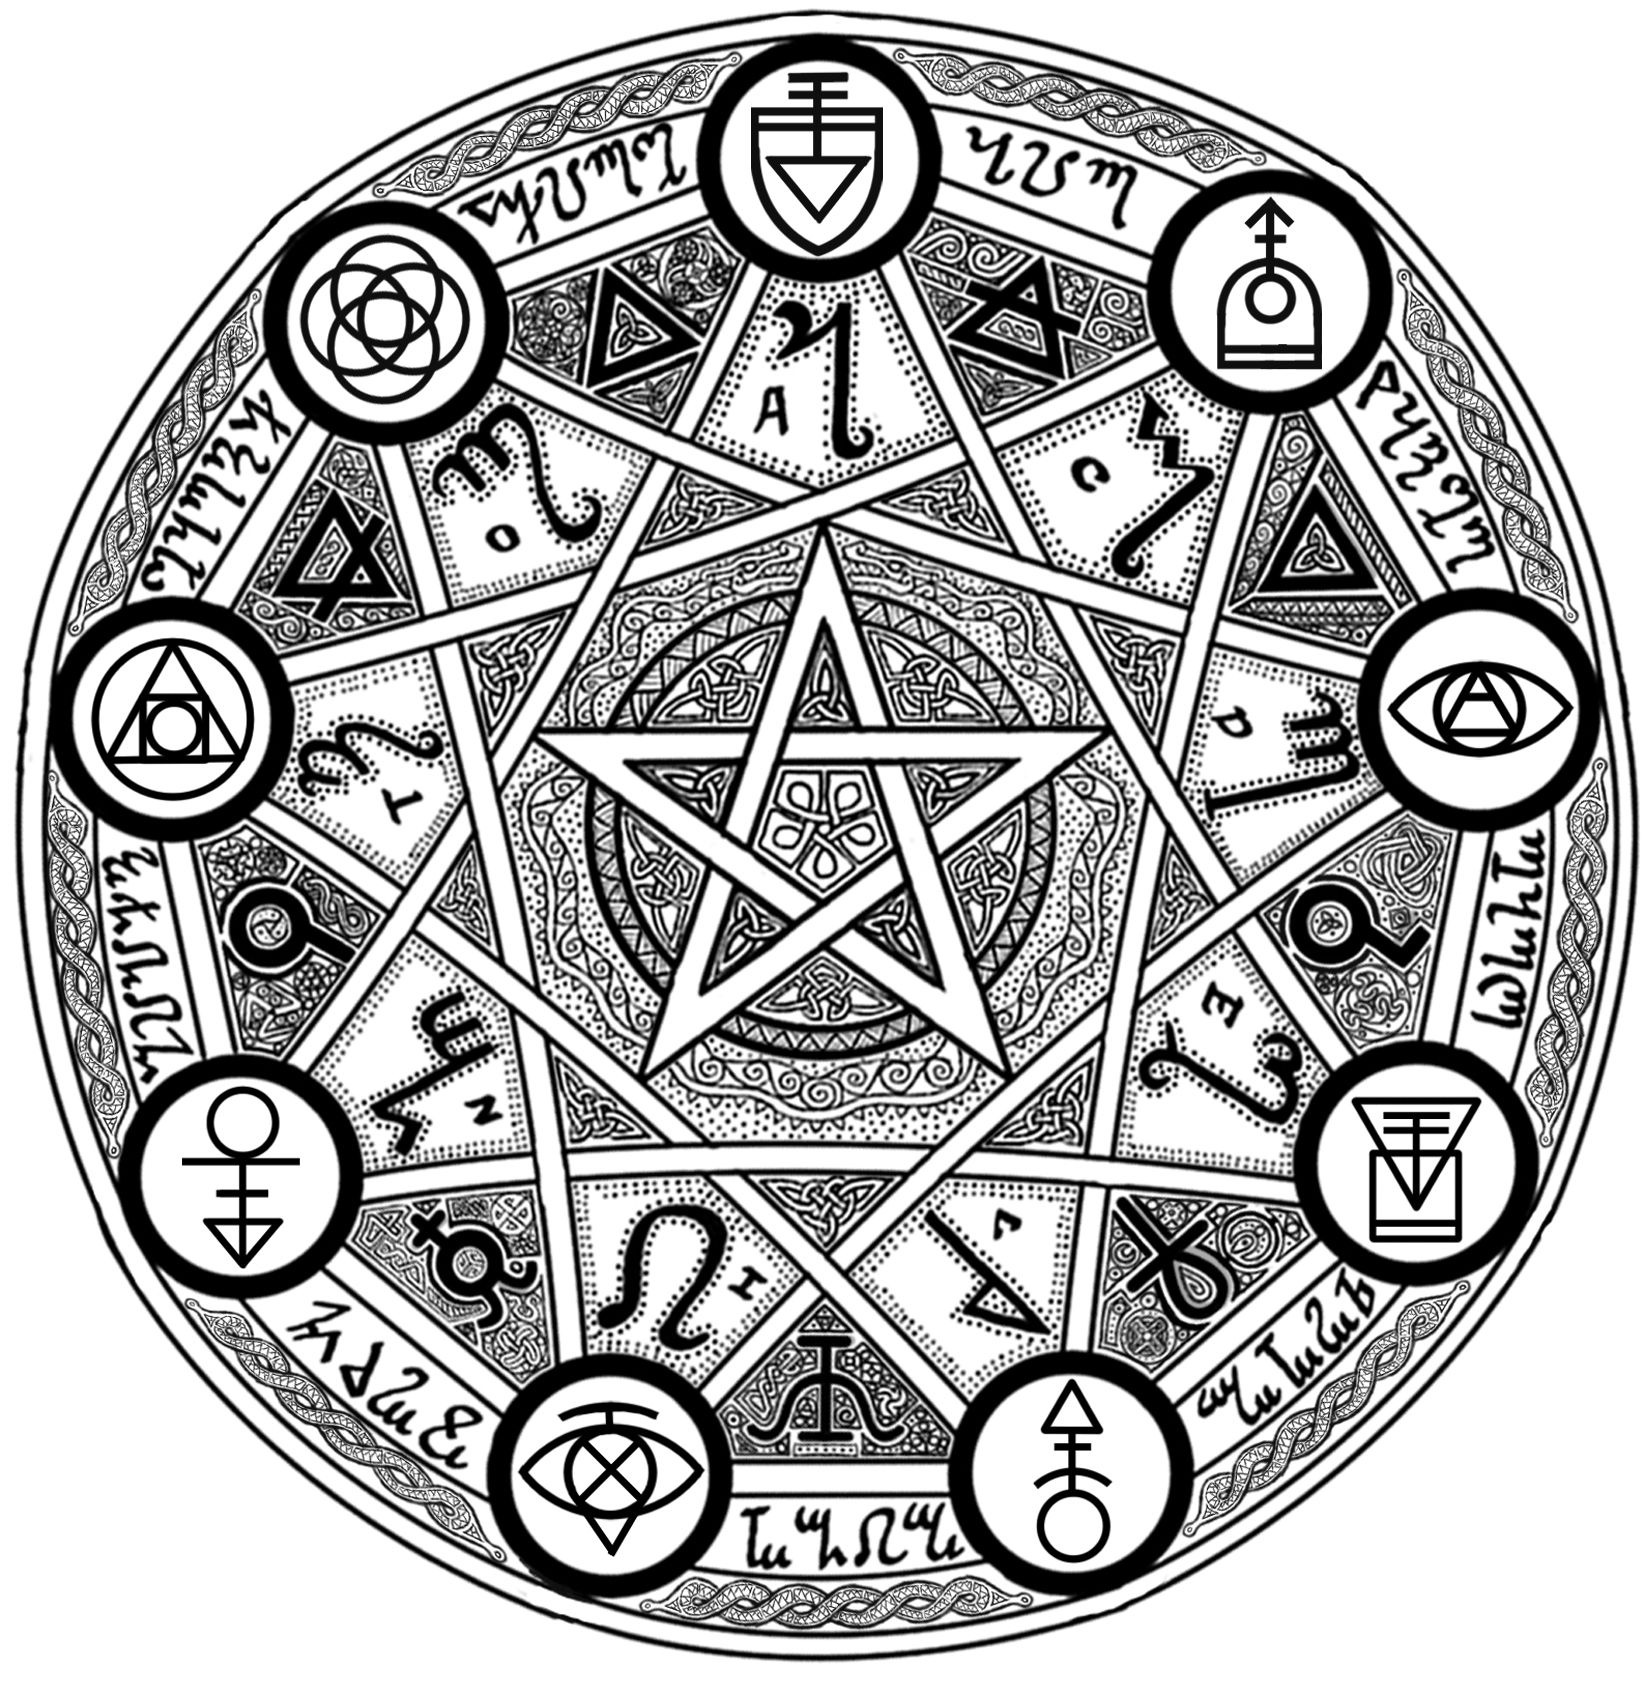 Самый загадочный знак. Магический пентакль Соломона богатства знак. Магическая печать пентаграмма Соломона. Семиконечная пентаграмма Соломона. Магия гексаграмма звезда Соломона.